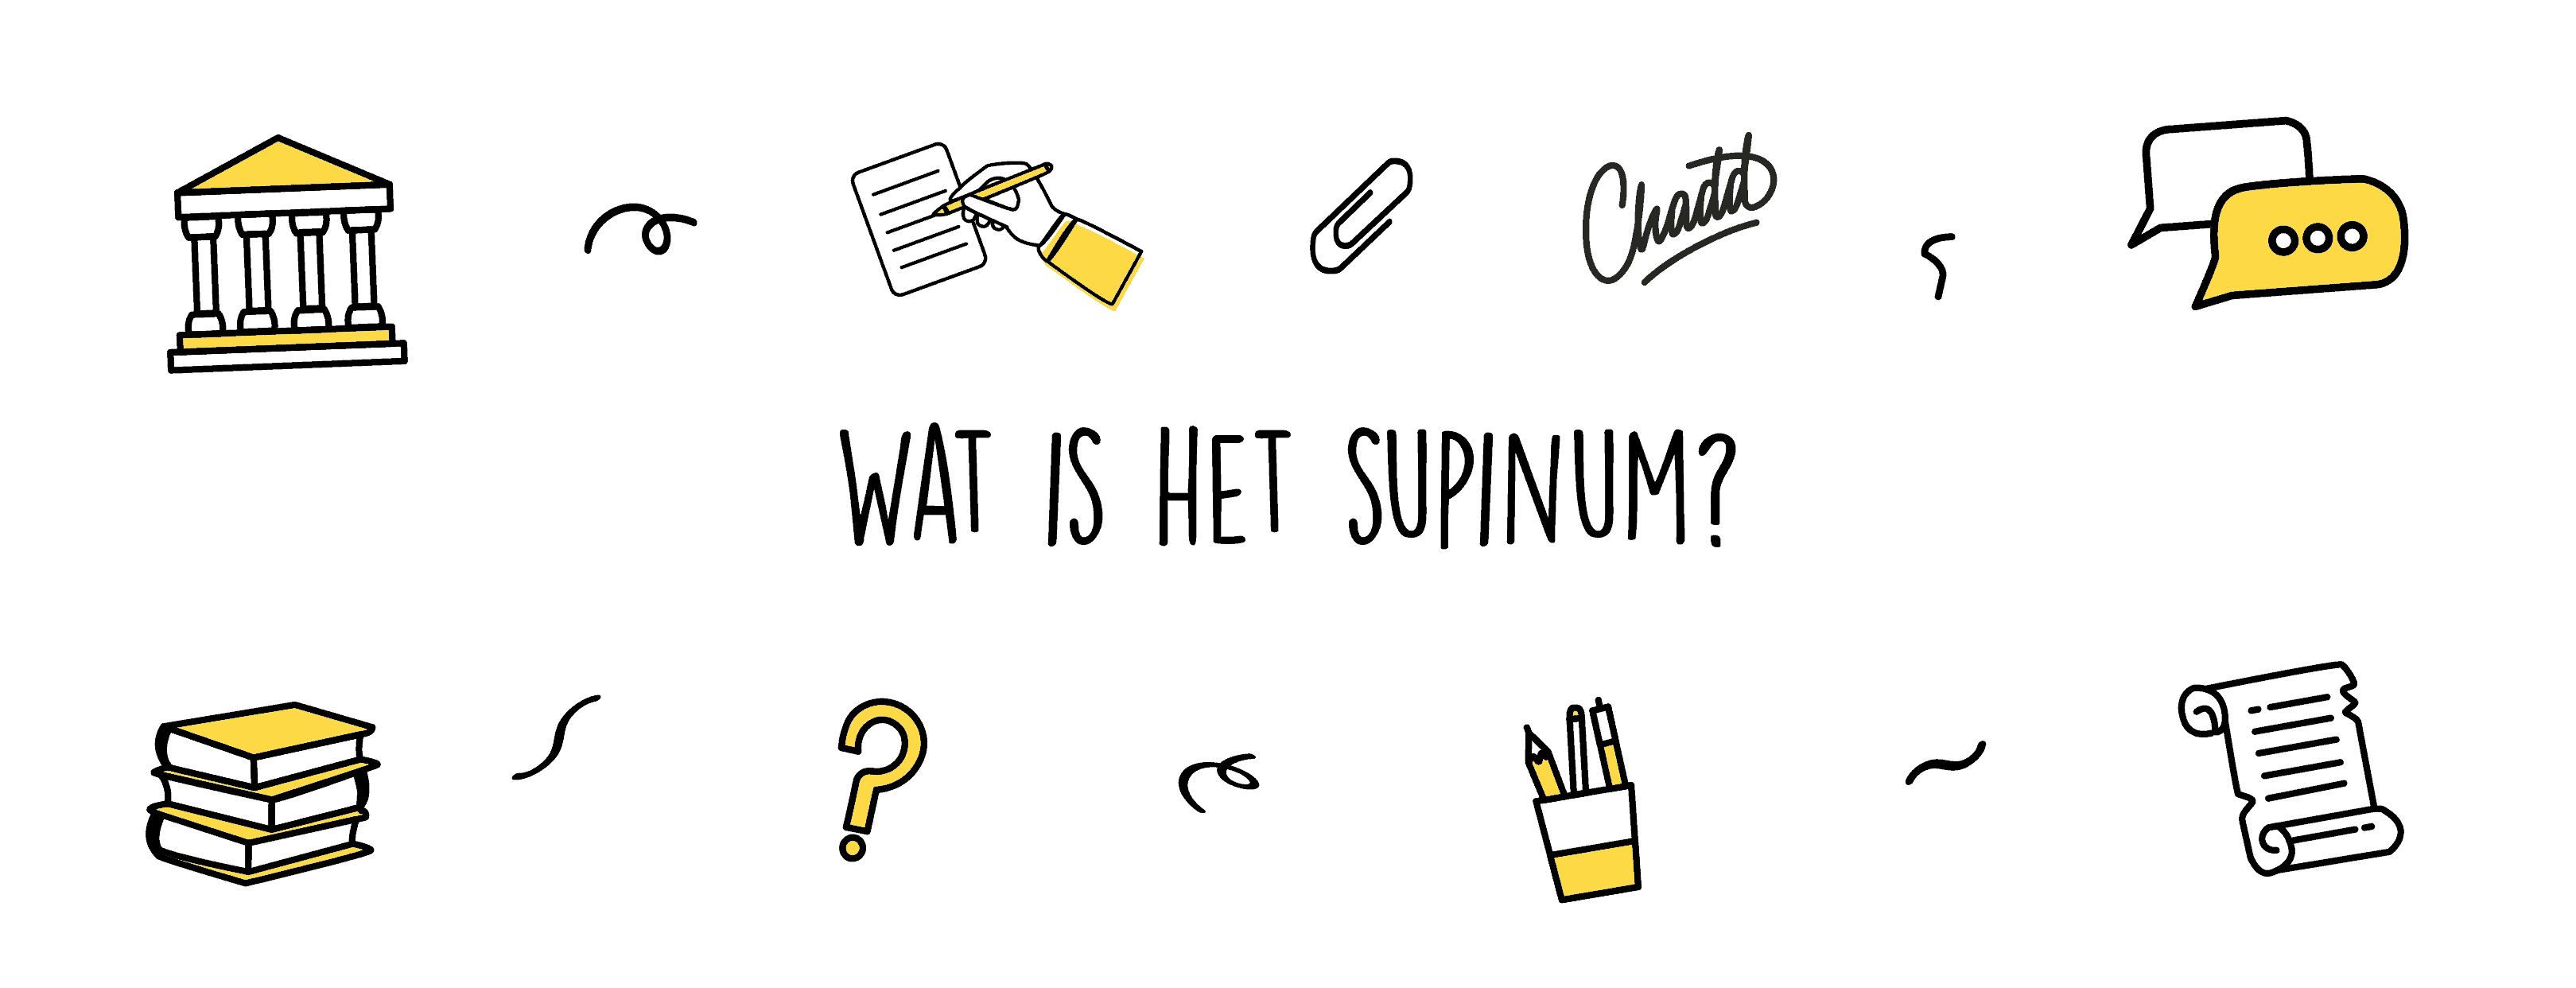 wat is het supinum